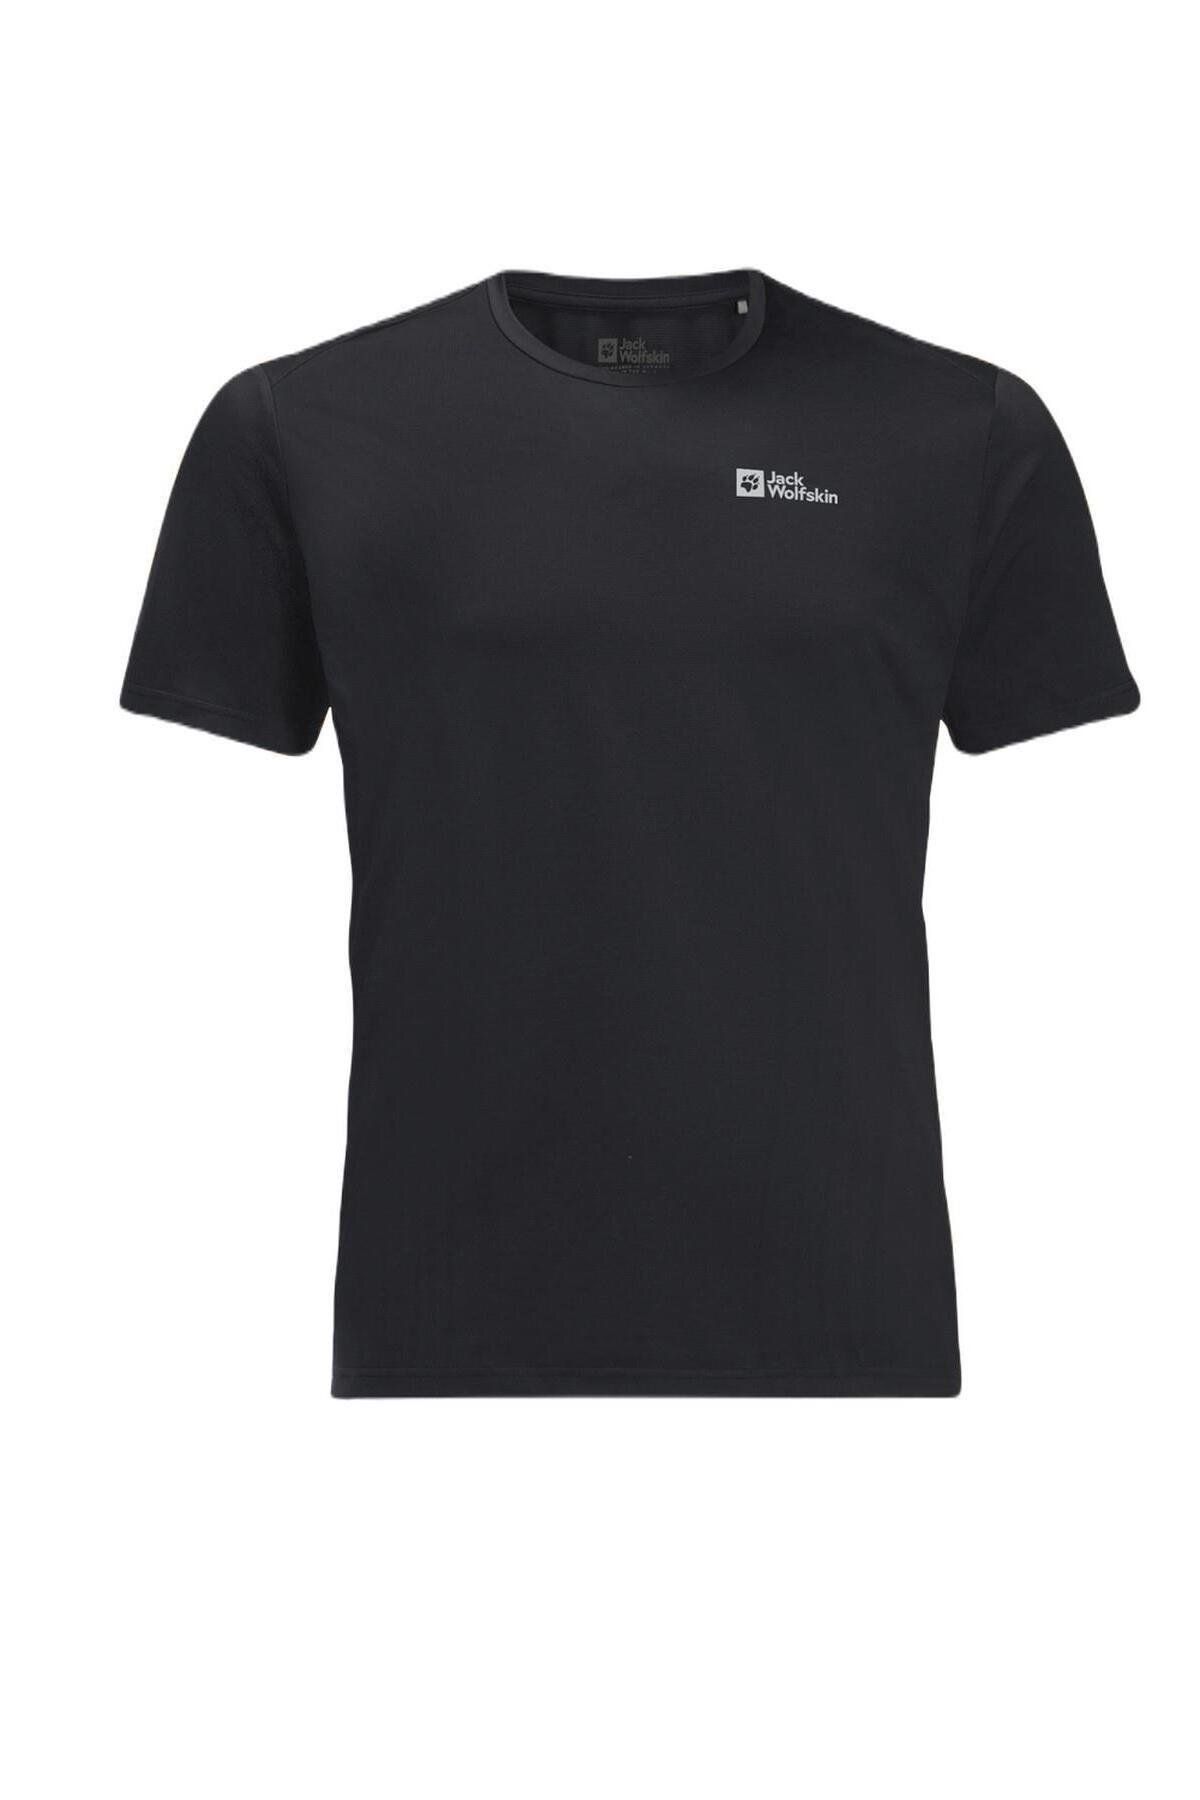 Jack Wolfskin Delgami S/s M Erkek Siyah T-shirt